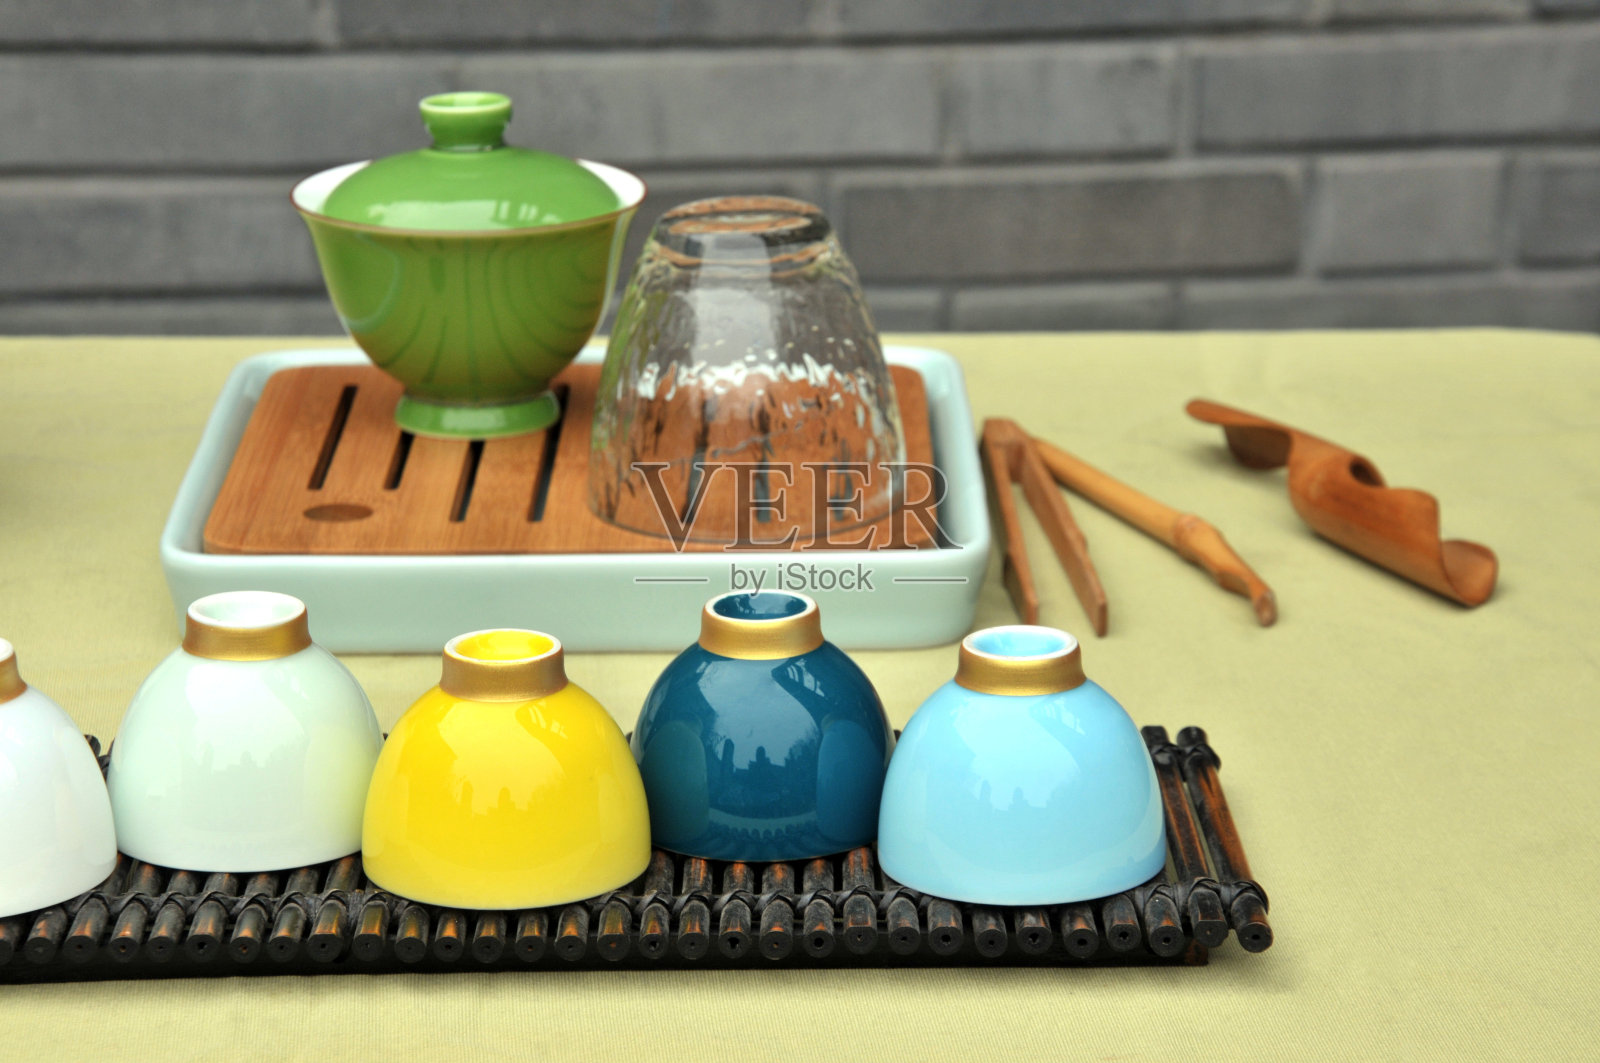 传统中国茶壶套装照片摄影图片